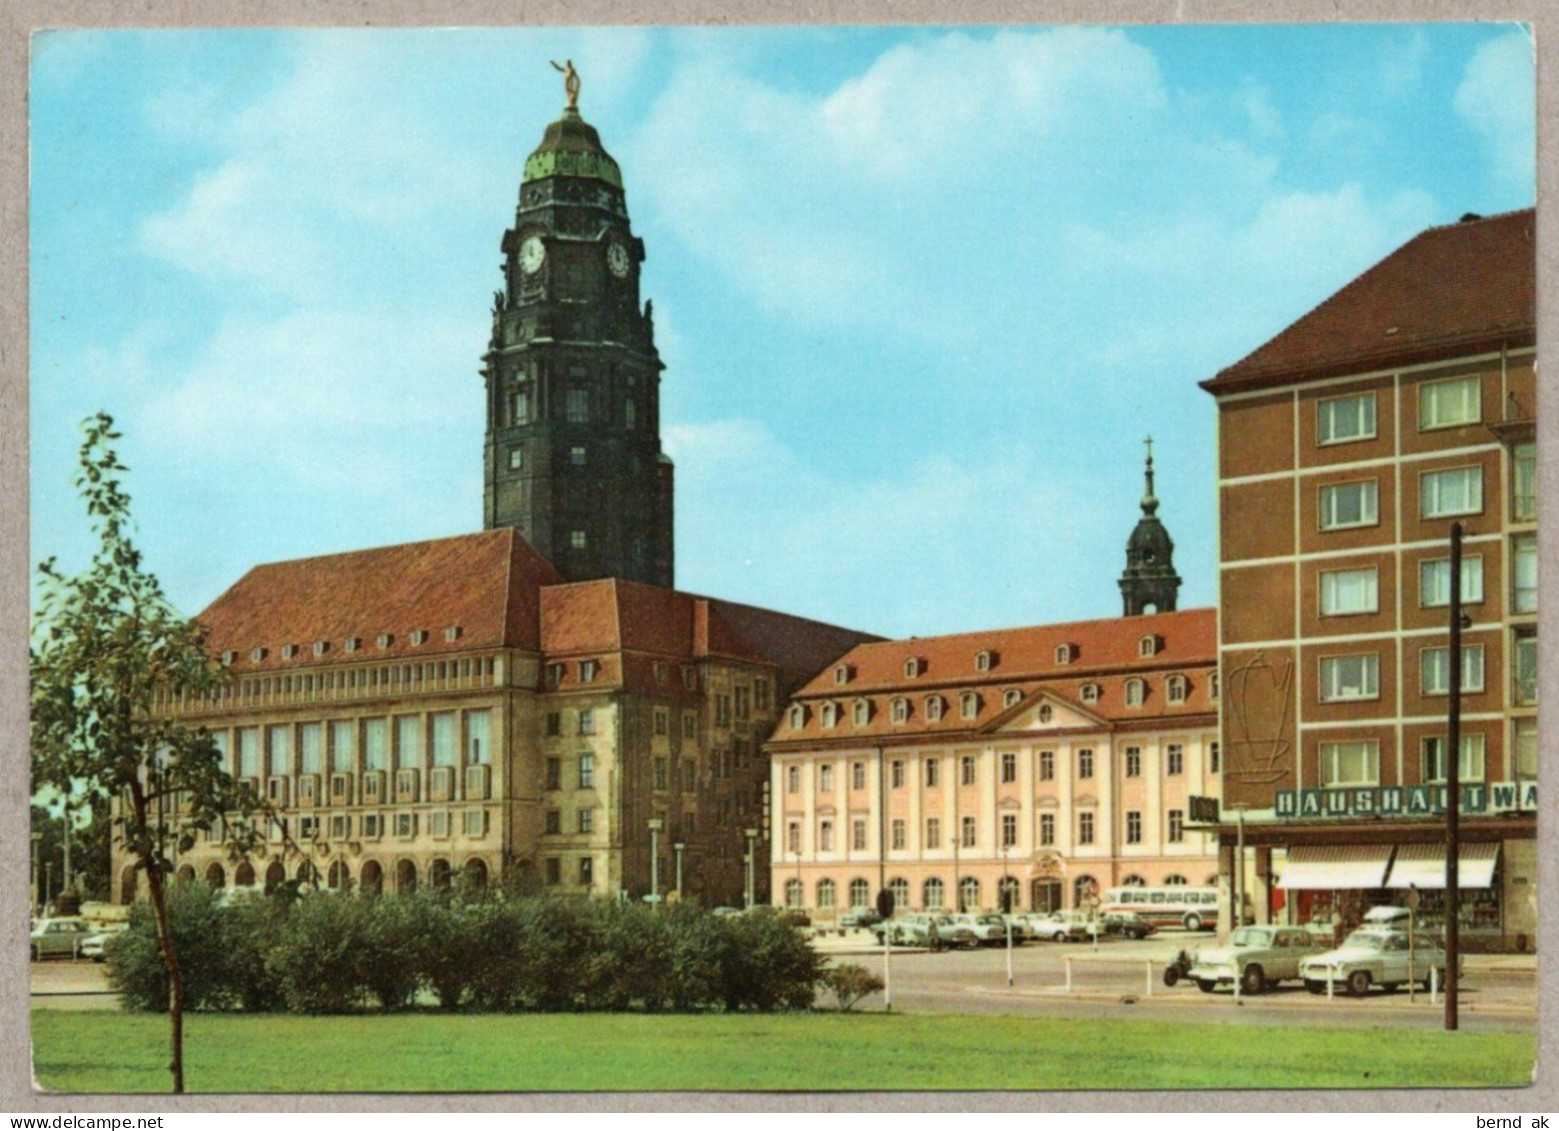 004# BRD - 10  Color - AK:  Dresden - Pillnitz, Brühlsche Terasse, Rathaus, Gewandhaus .. (alle im Bild)